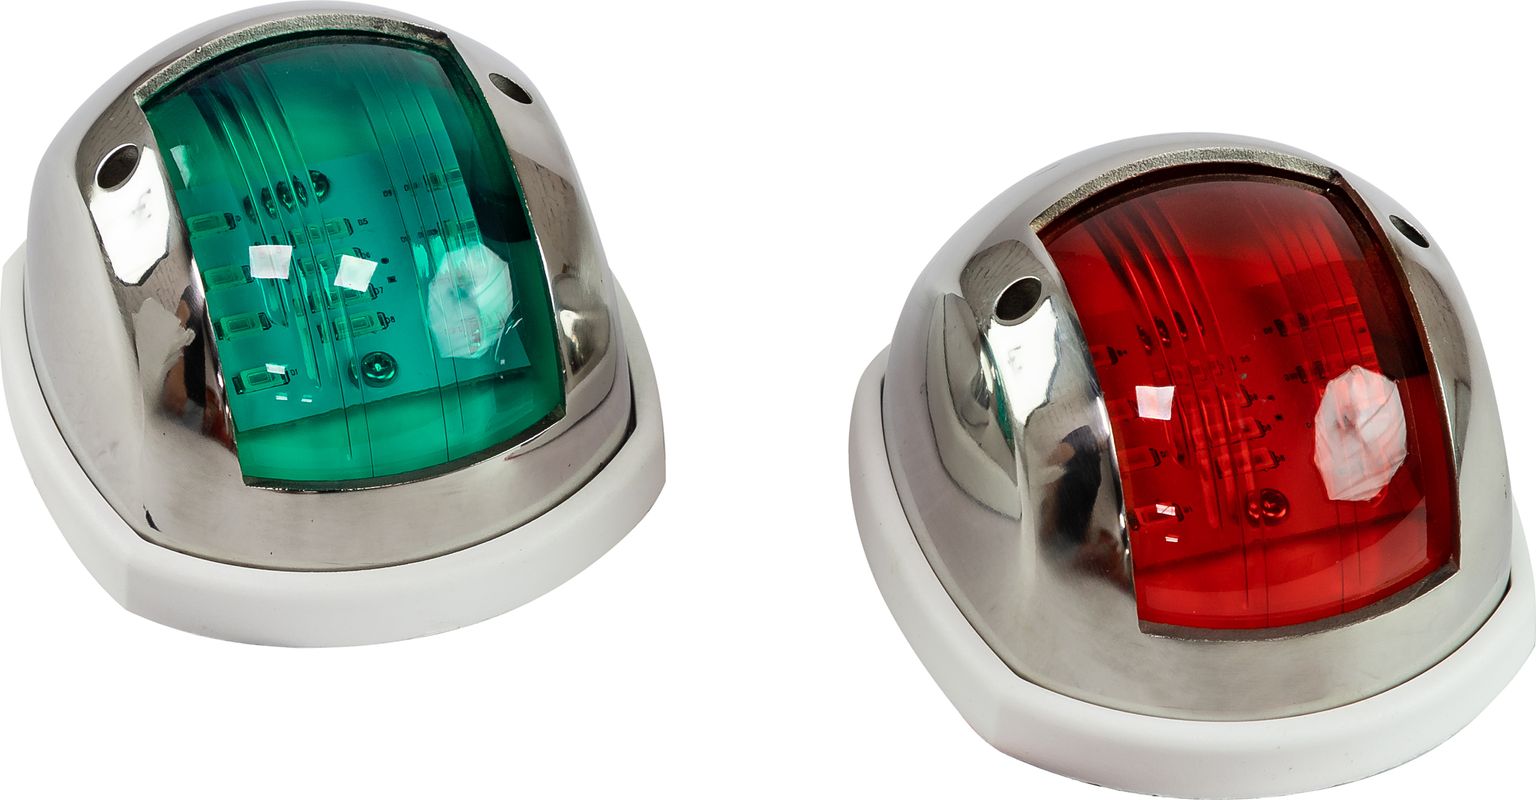 Огни ходовые 89х55 мм комплект (красный, зеленый), LED, нержавеющий корпус LPSDLPTLED0289 огни ходовые светодиодные белый корпус комплект c91106pwb